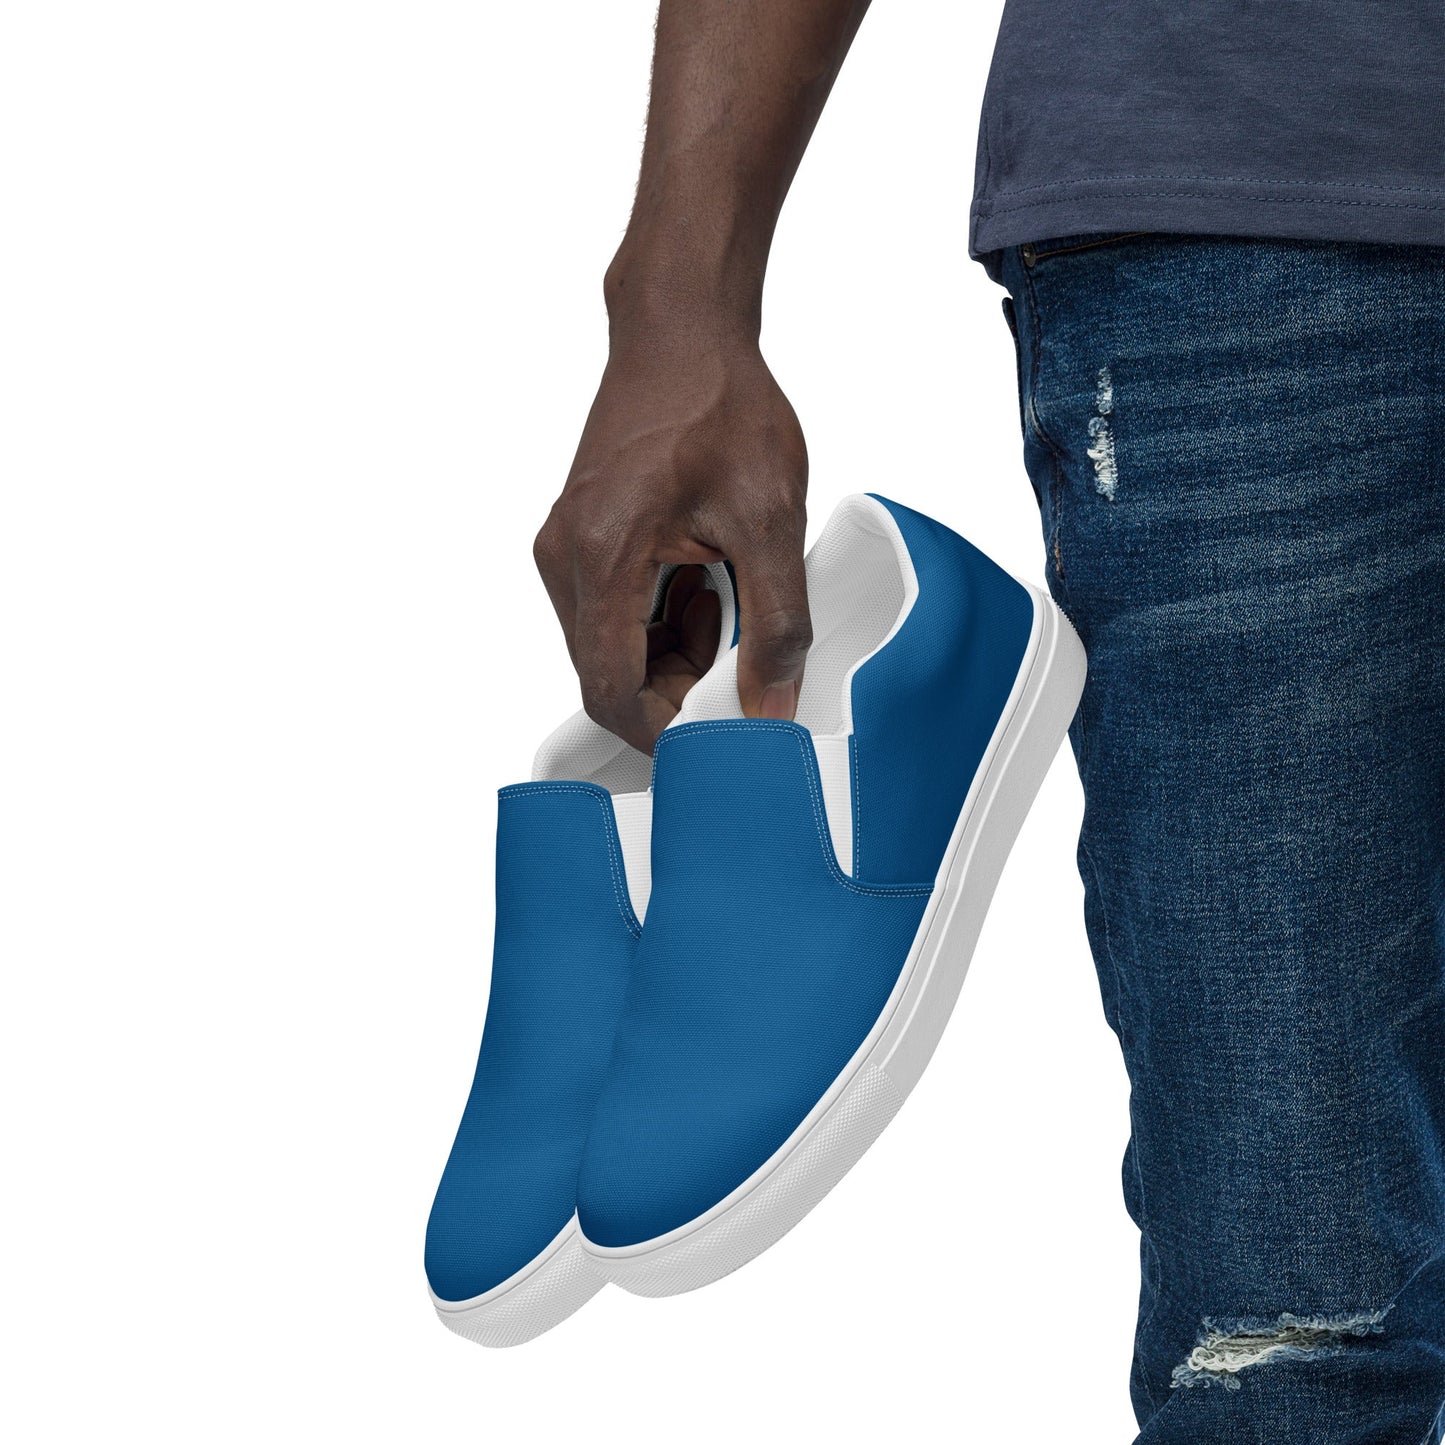 klasneakers Men’s slip-on canvas shoes - Rich Blue